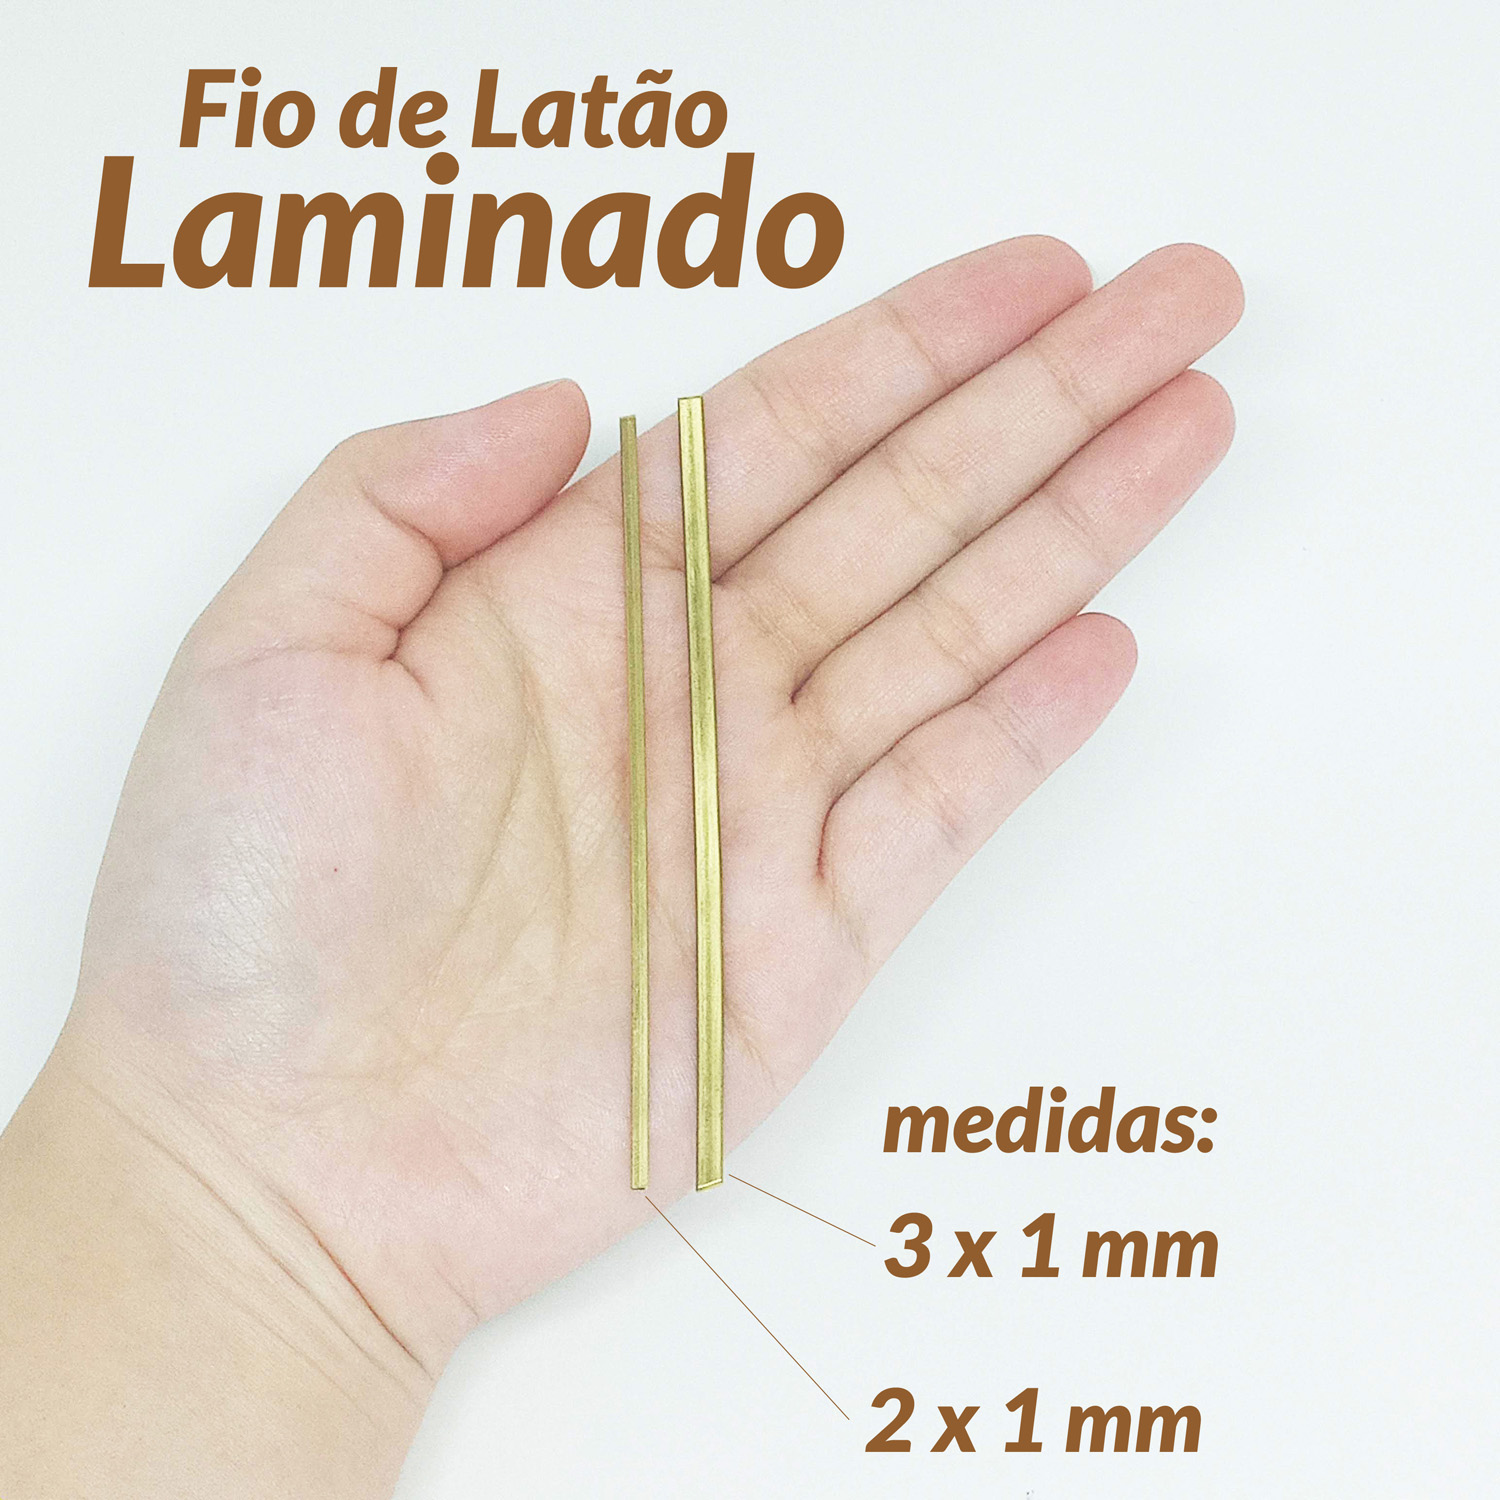 01-910174-FIO DE LATÃO LAMINADO 2X1 1KG